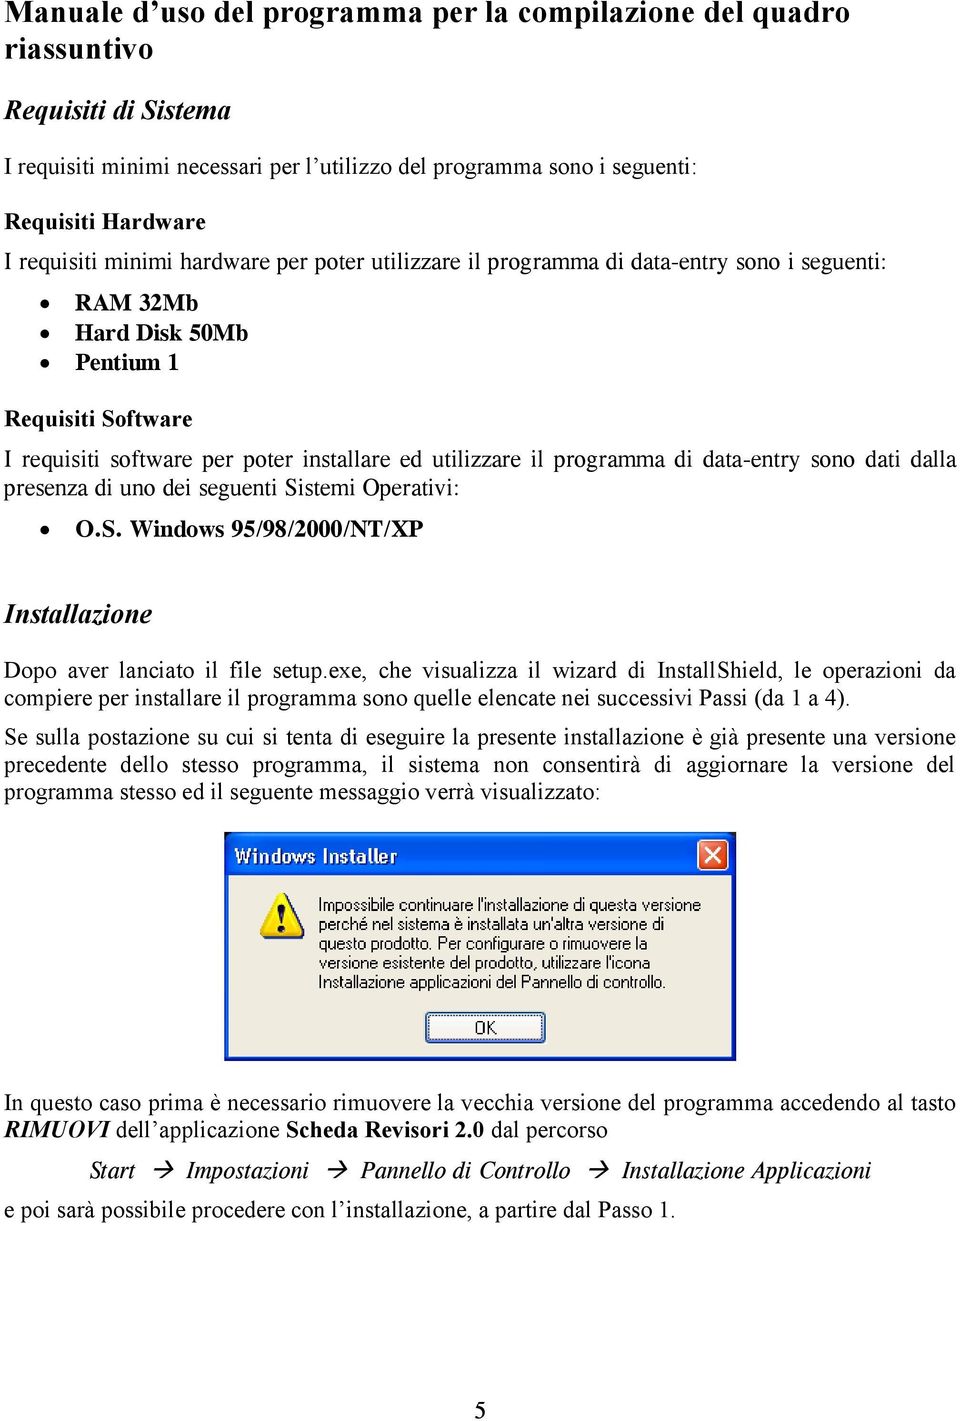 programma di data-entry sono dati dalla presenza di uno dei seguenti Sistemi Operativi: O.S. Windows 95/98/2000/NT/XP Installazione Dopo aver lanciato il file setup.